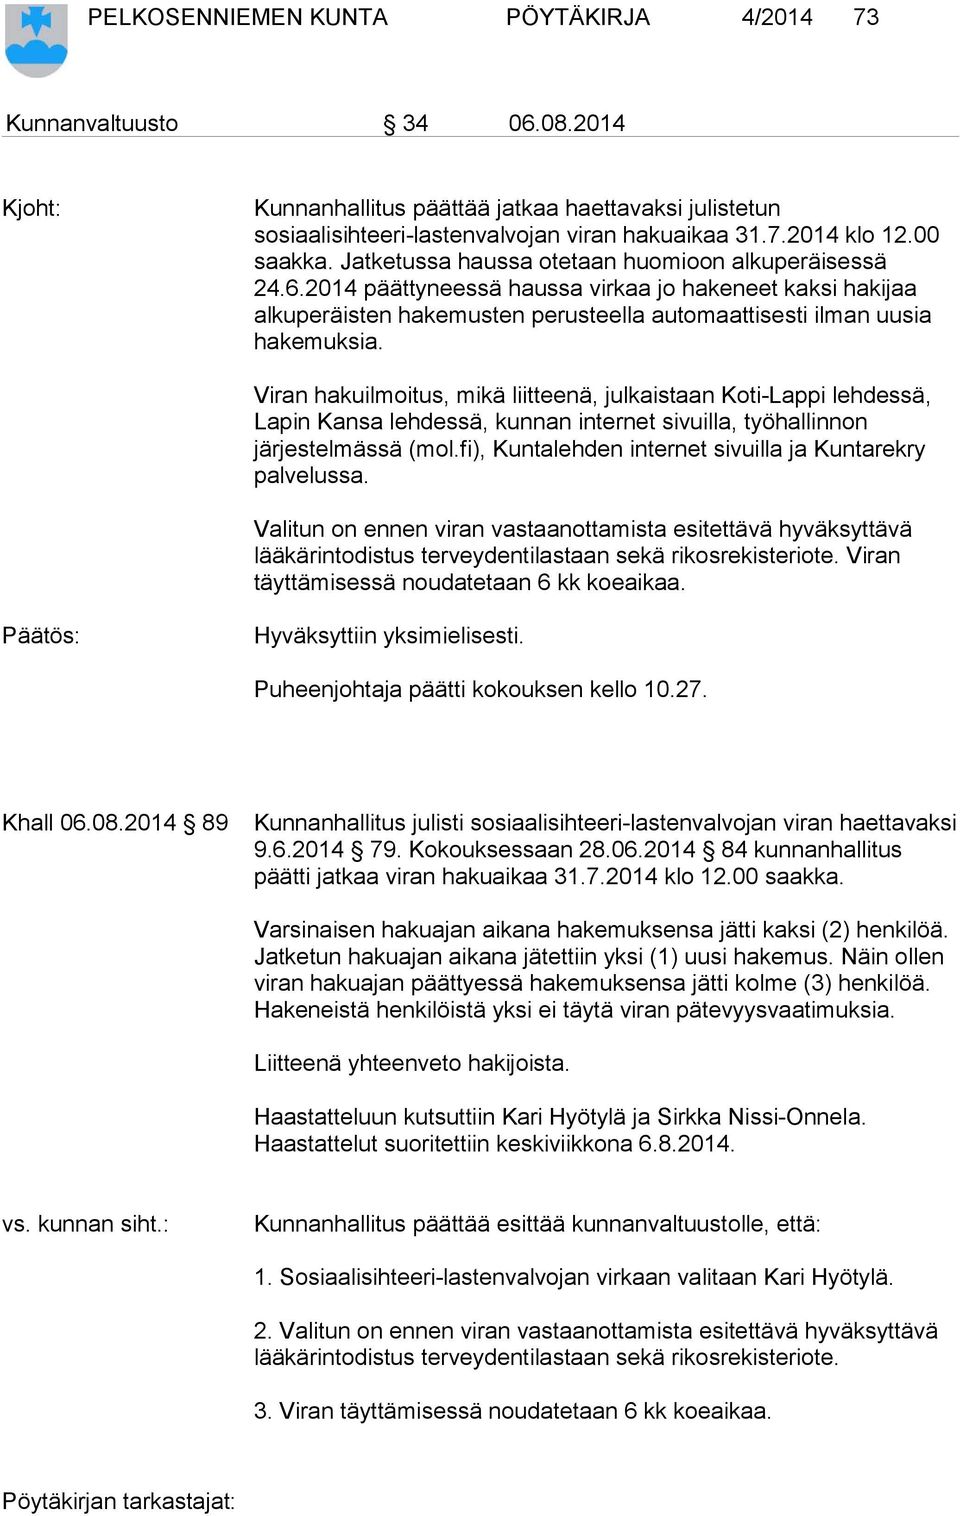 Viran hakuilmoitus, mikä liitteenä, julkaistaan Koti-Lappi lehdessä, Lapin Kansa lehdessä, kunnan internet sivuilla, työhallinnon järjestelmässä (mol.